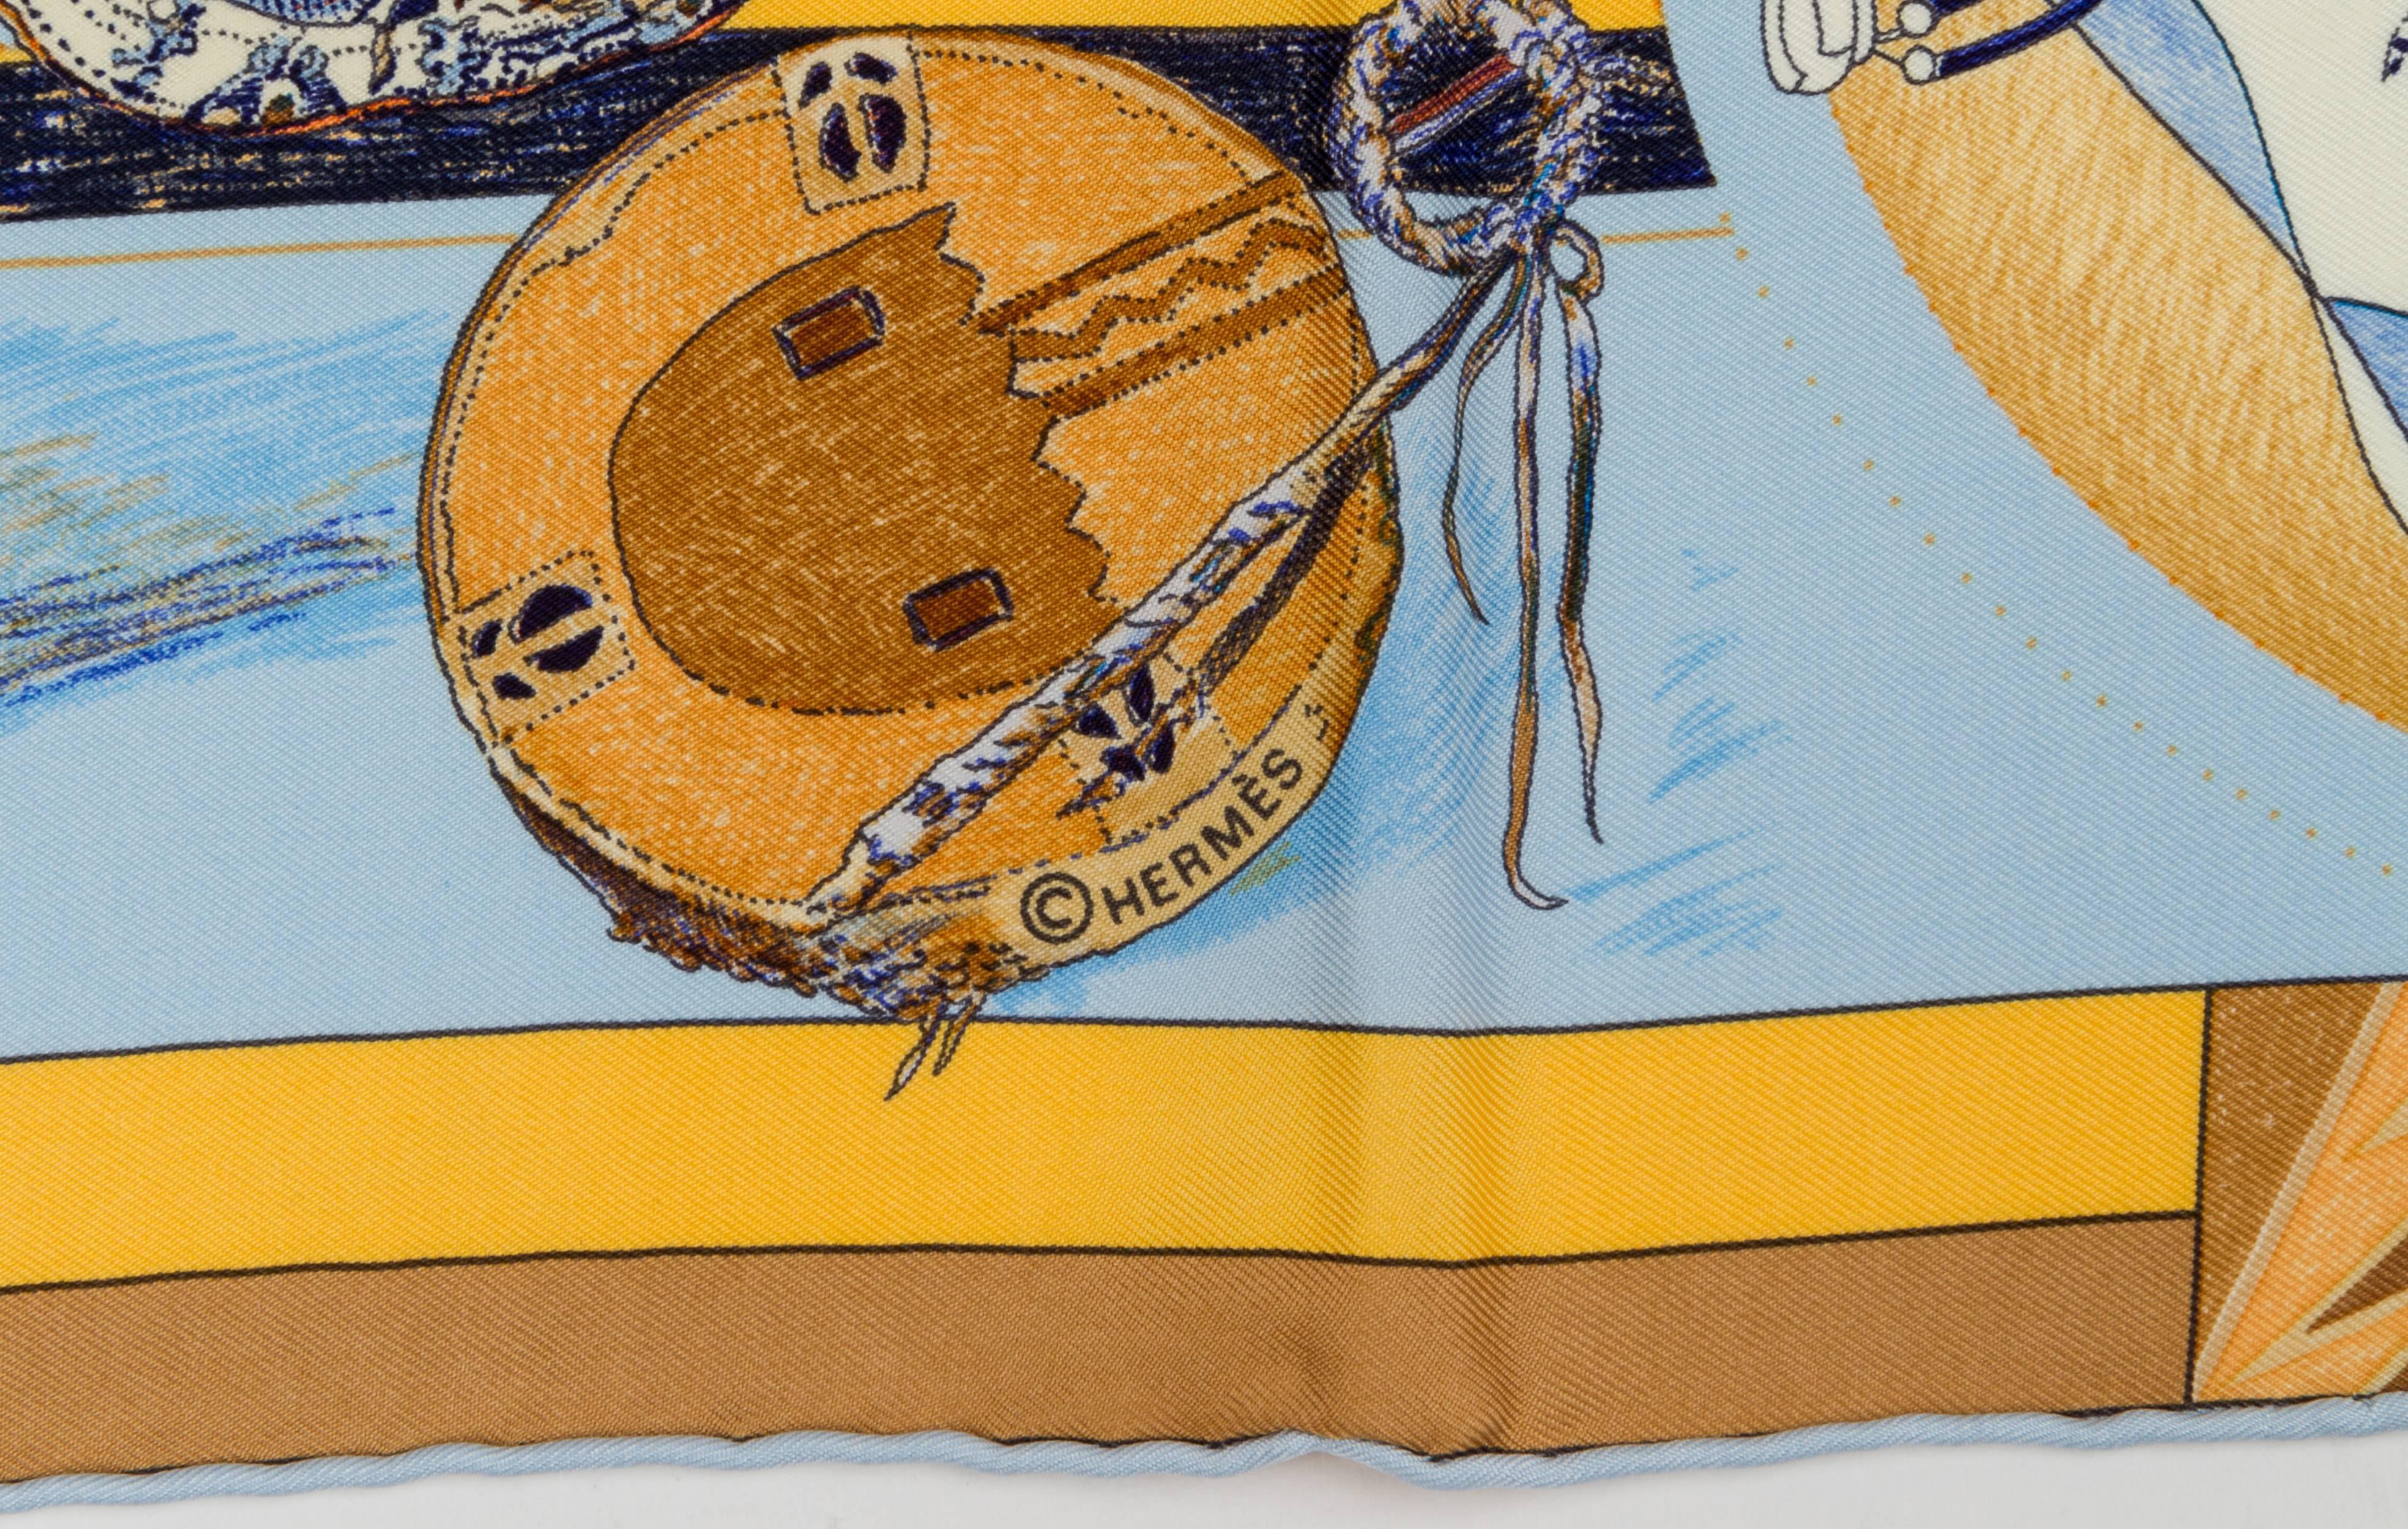 Rare écharpe Hermès Les Danses des Indiens, 100% sergé de soie, conçue par l'artiste américain très convoité, Kermit Oliver. Bords roulés à la main, excellent état. La soie est rigide, jamais lavée auparavant, et il y a un léger pli